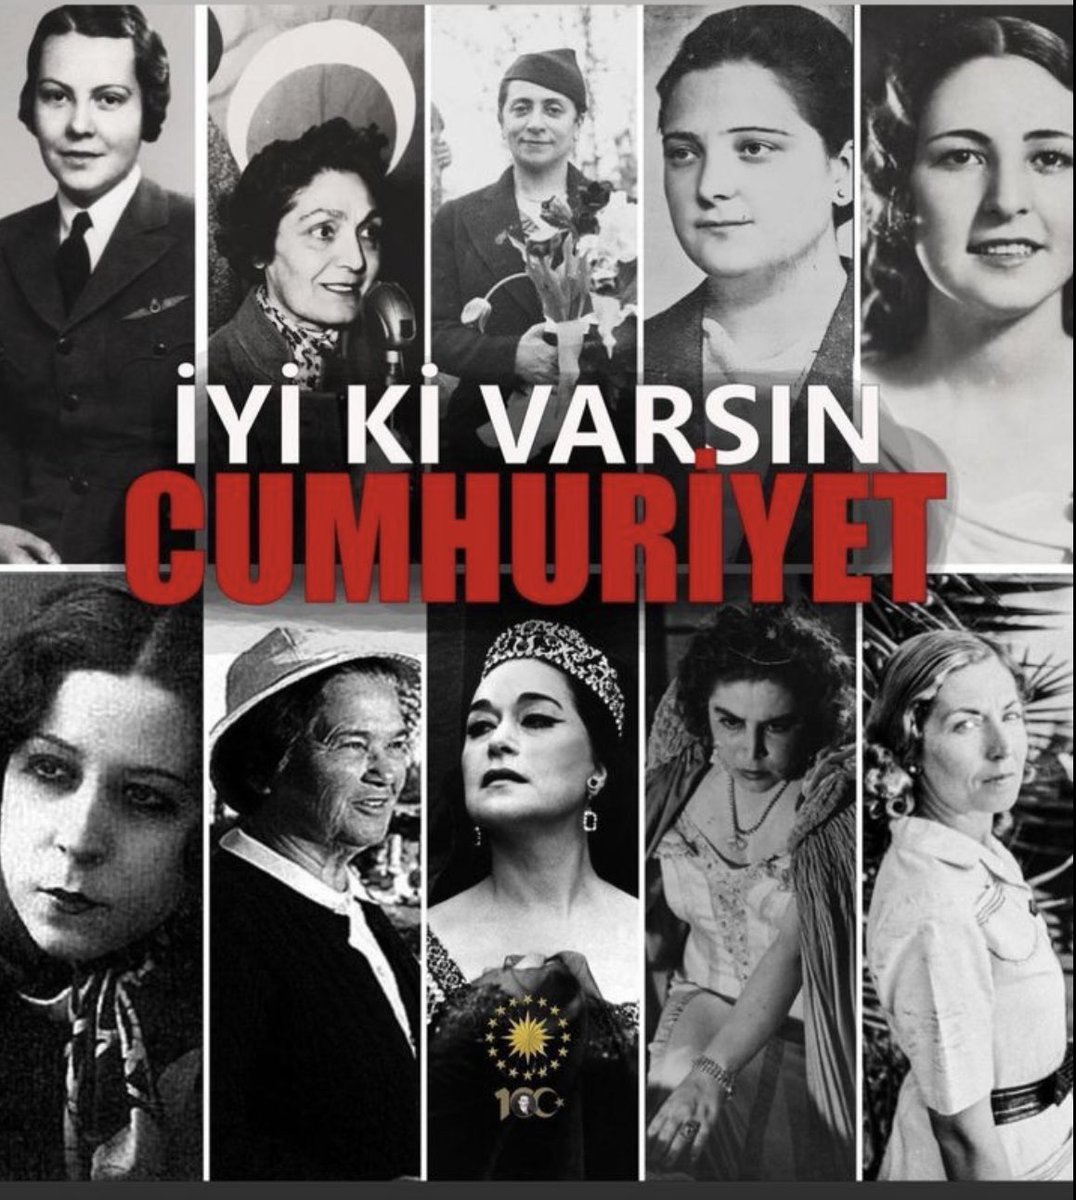 #cumhuriyet100yaşında #atatürk #mustafakemalatatürk #cumhuriyetbayramı #rahmetleanıyoruz #payidar #kurtuluşsavaşı 🇹🇷🇹🇷🇹🇷